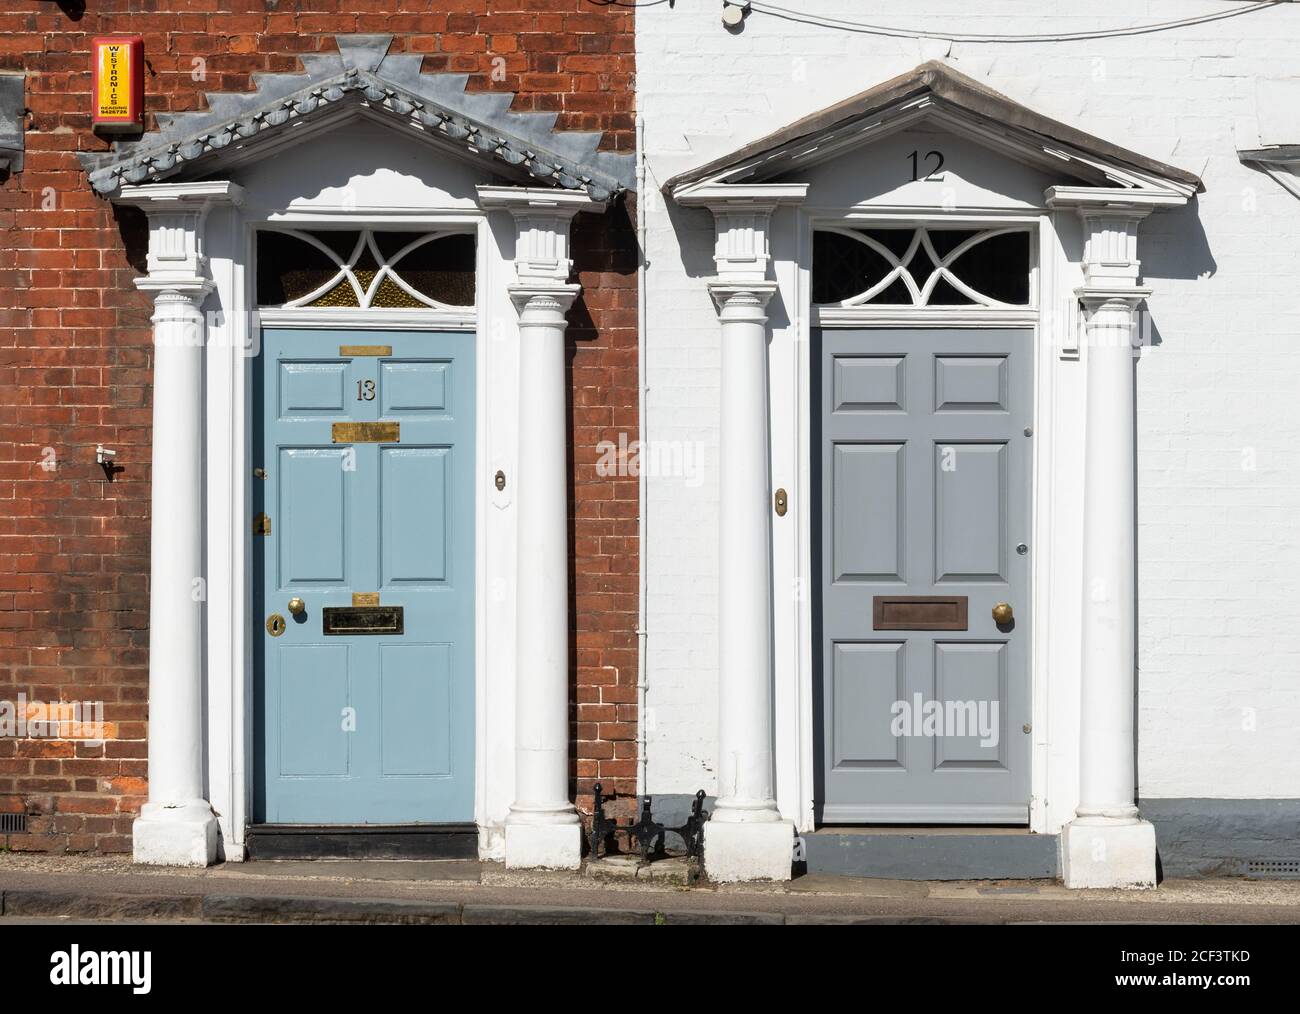 Zwei benachbarte prunkvolle Eingangstüren mit Säulen Stockfoto